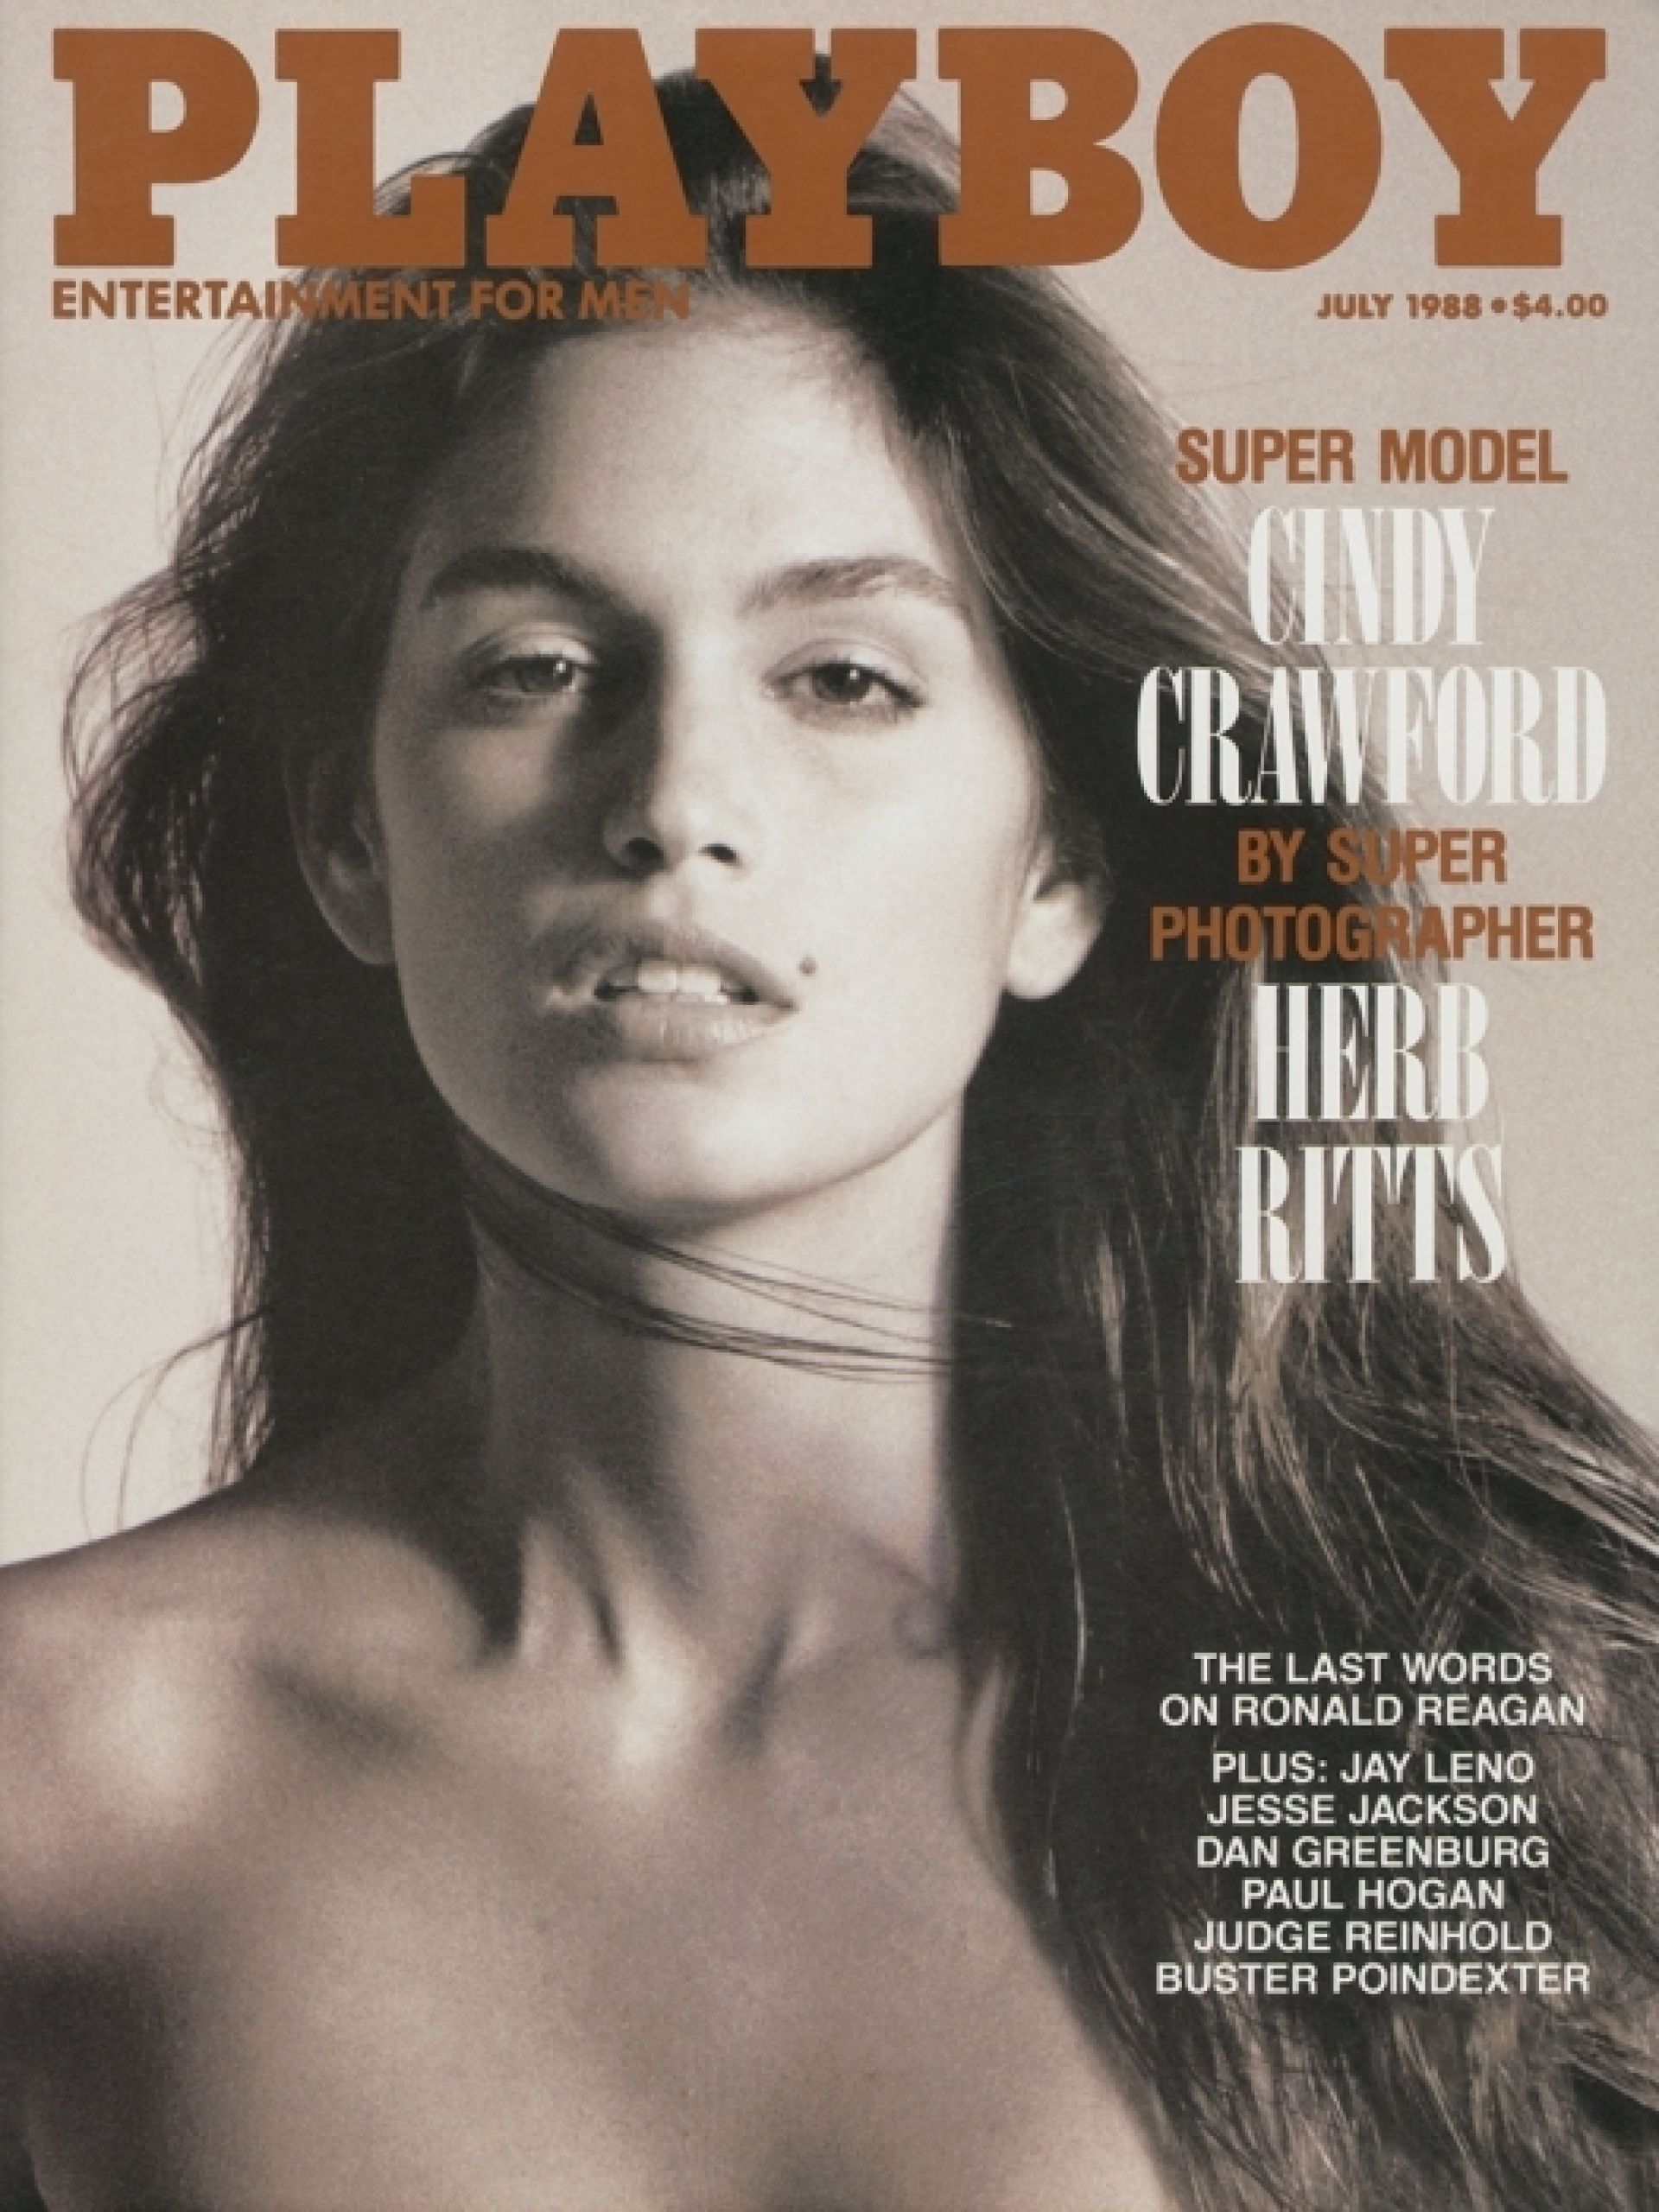 22-летняя Синди Кроуфорд на обложке Playboy, 1988 год Фото:Playboy.